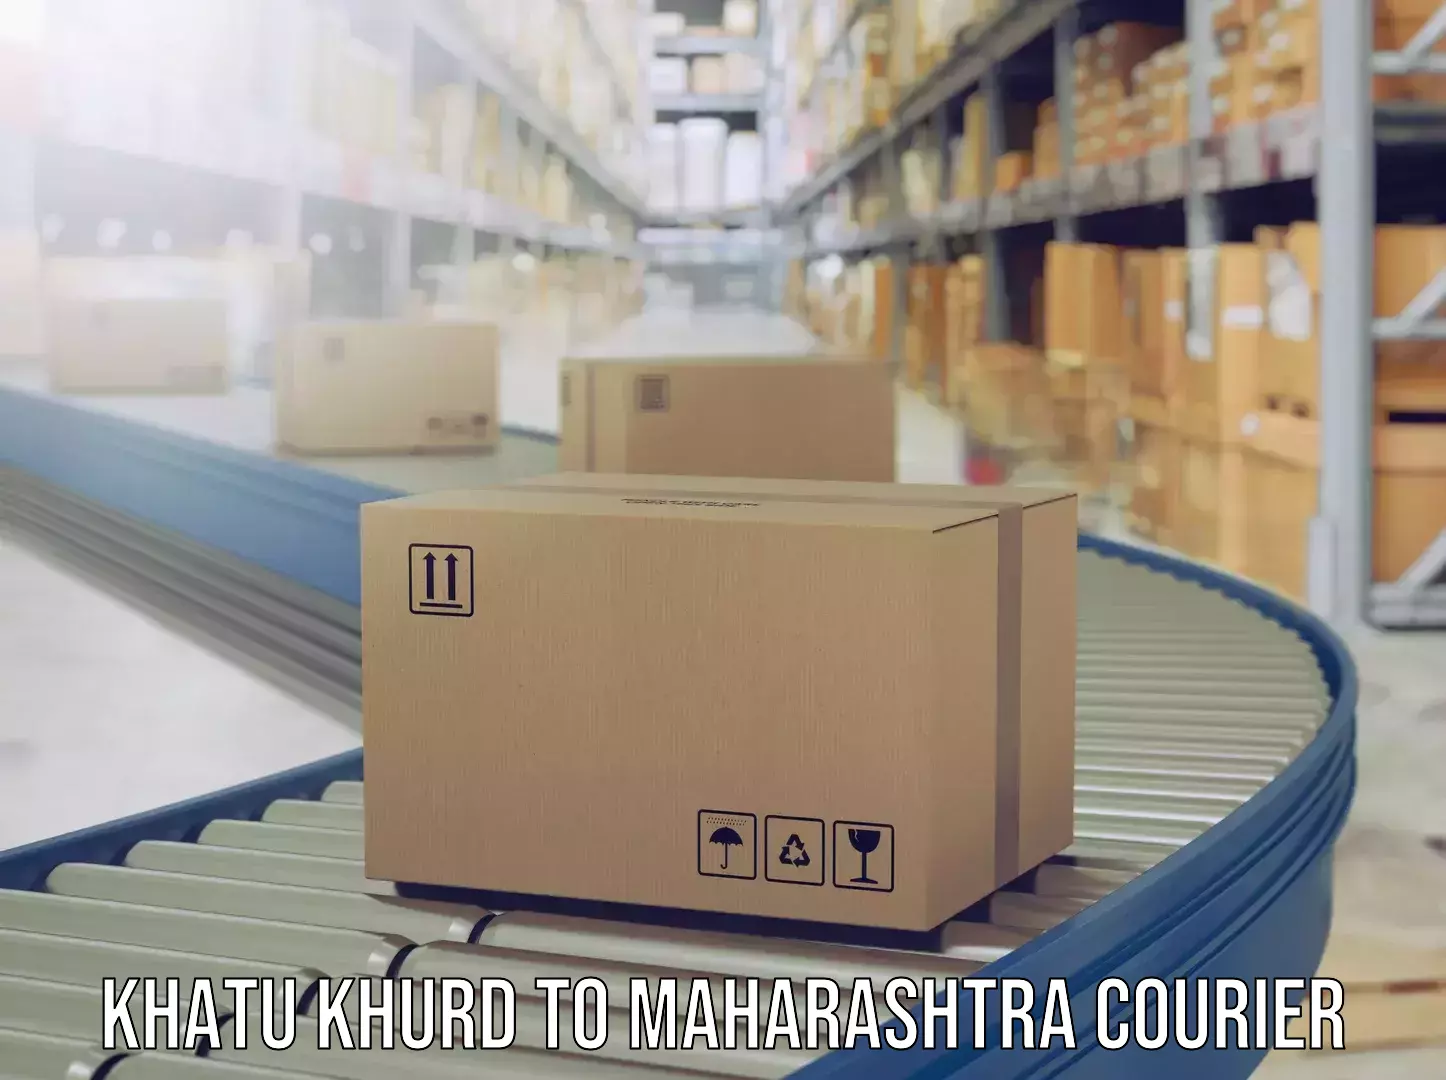 Luggage shipment tracking Khatu Khurd to Maharashtra